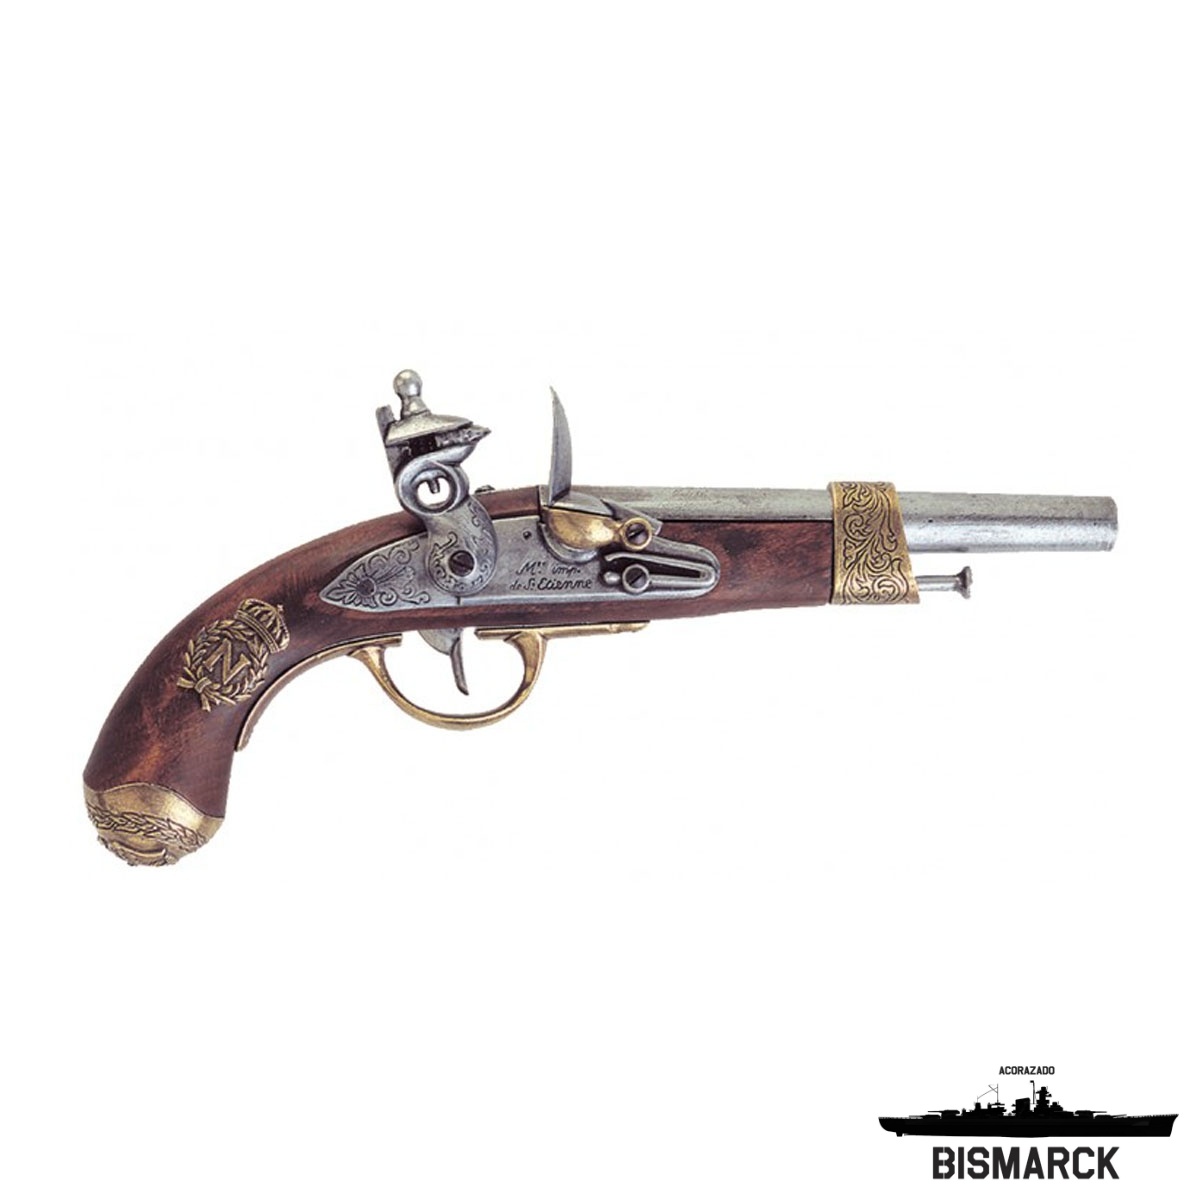  pistola de la guerra civil, madera y acero, réplica